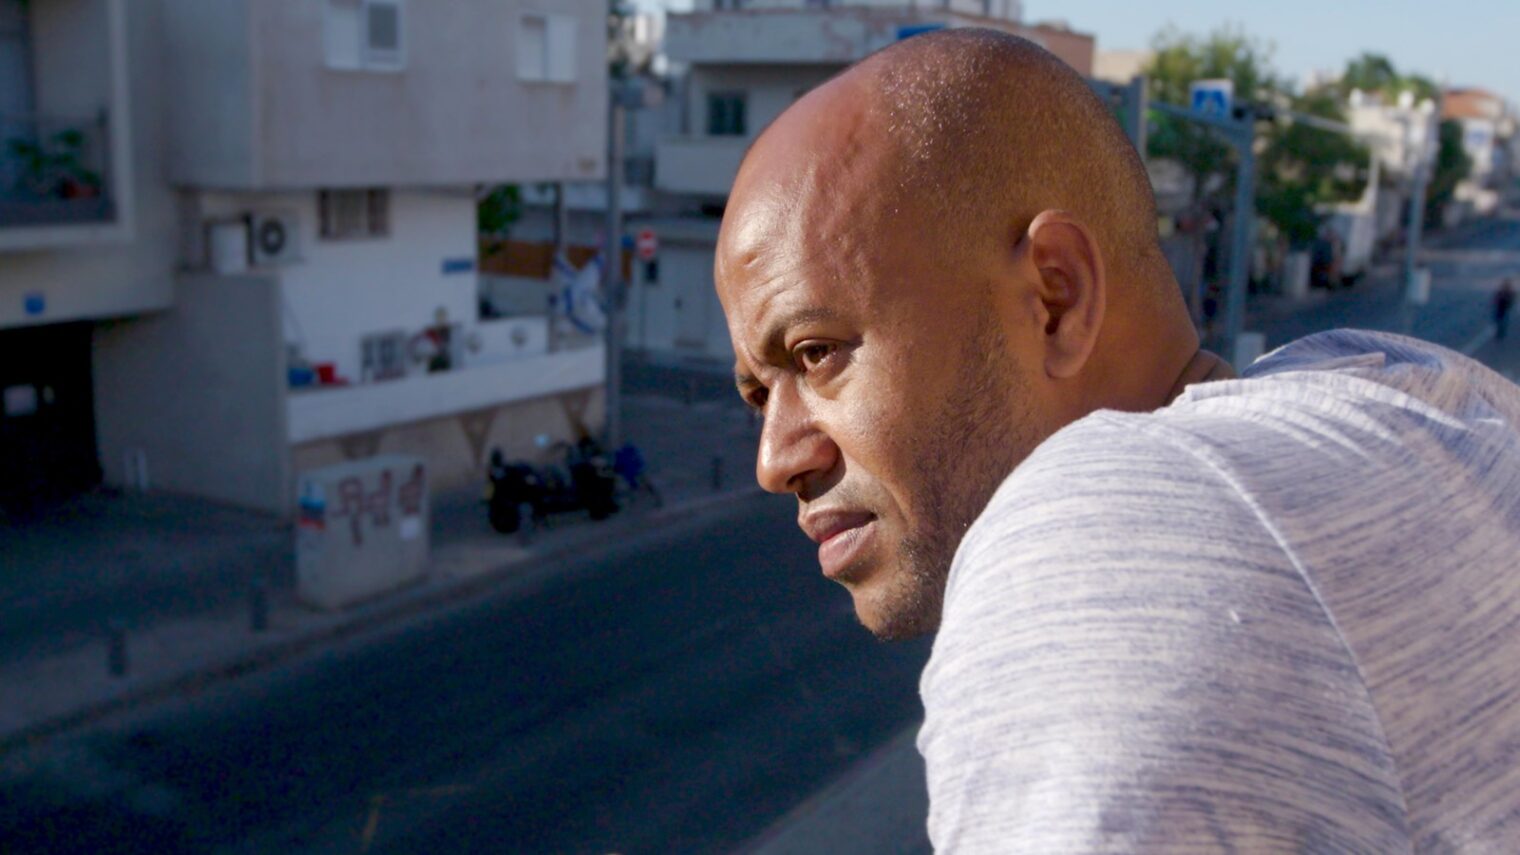 Eritrean asylum seeker Mogos Kidane Tewelde in Tel Aviv. Still from “My Year of Living Mindfully” courtesy of shannonharvey.com